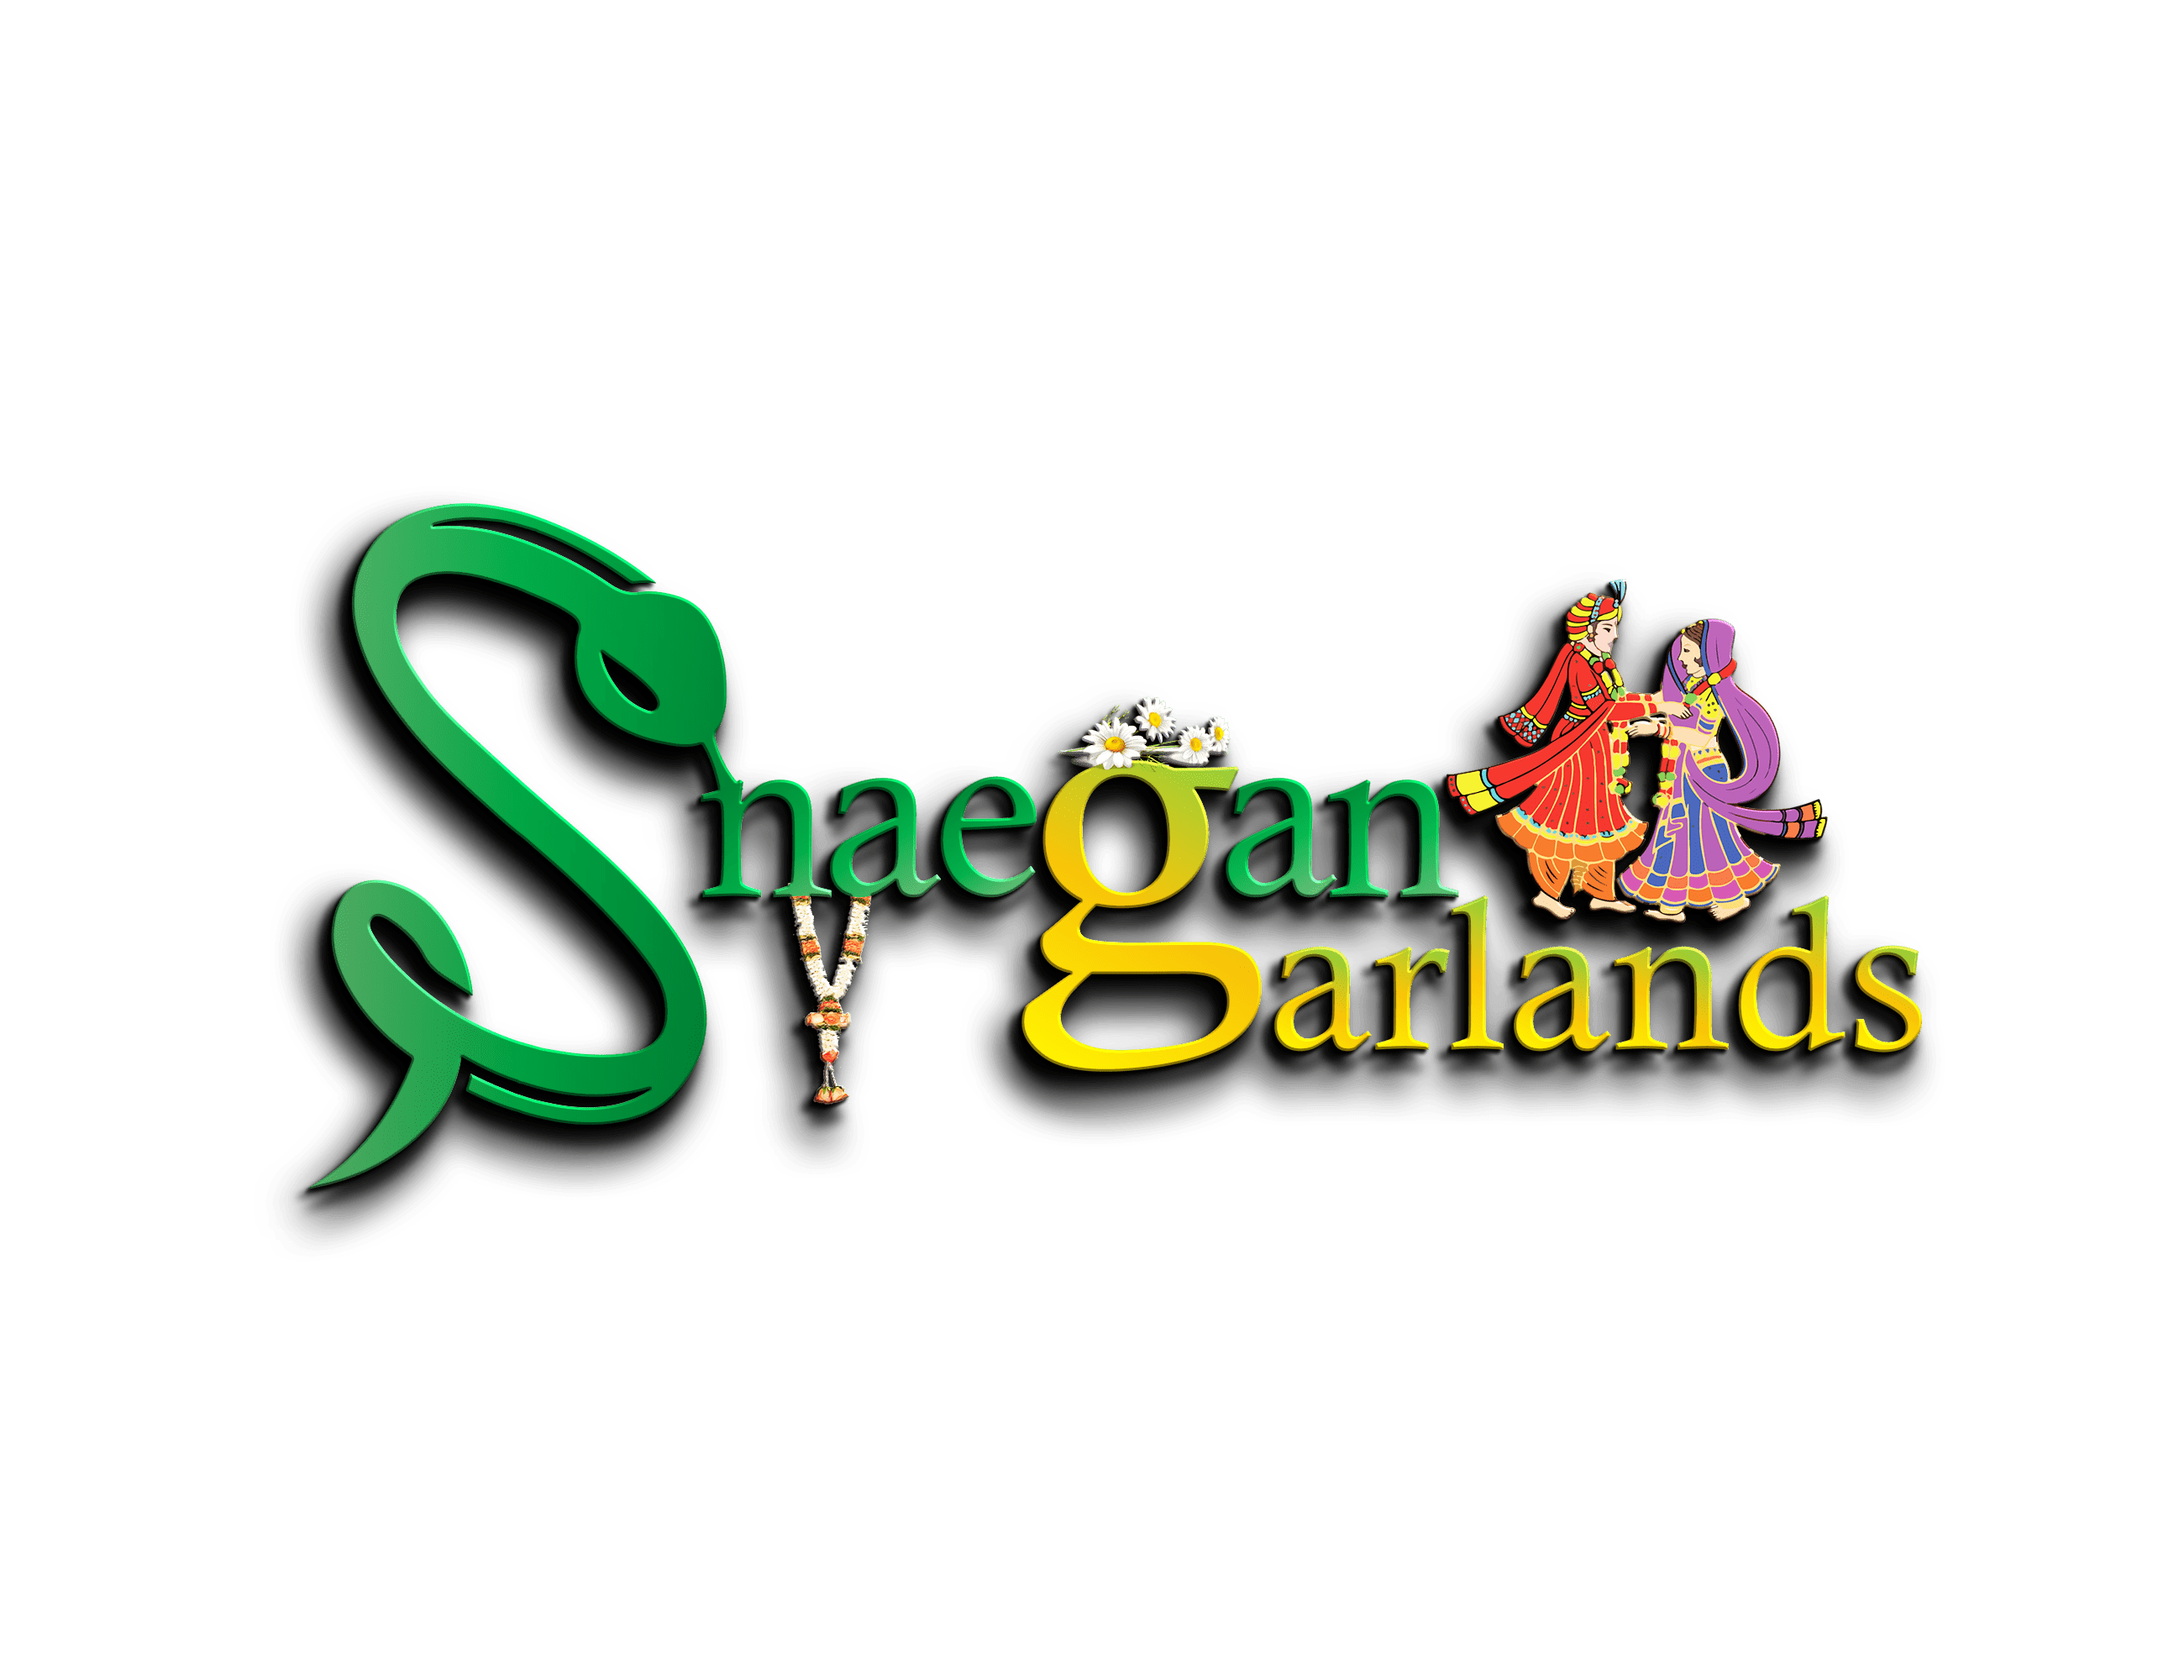 Snaegan wedding garlands